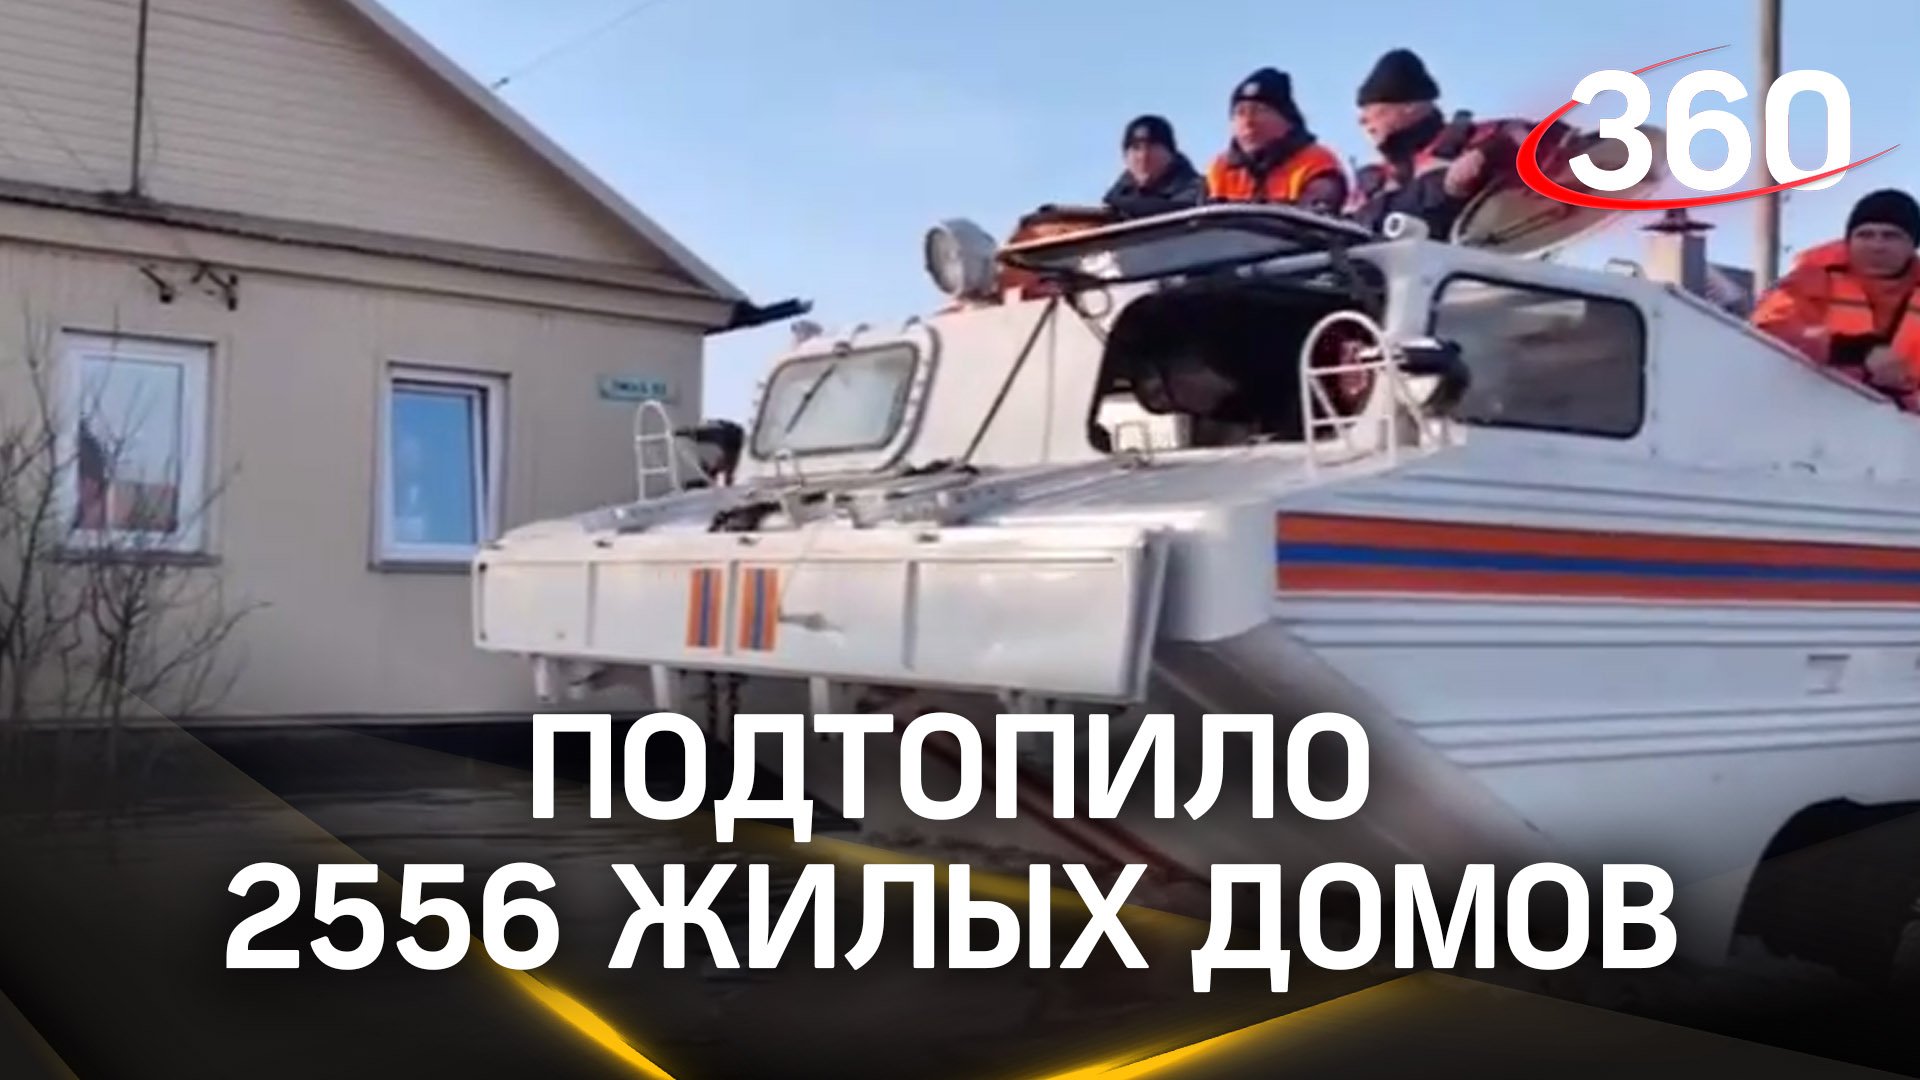 В Оренбургской области подтопило 2556 жилых домов, эвакуировали более 4,2 тысячи человек